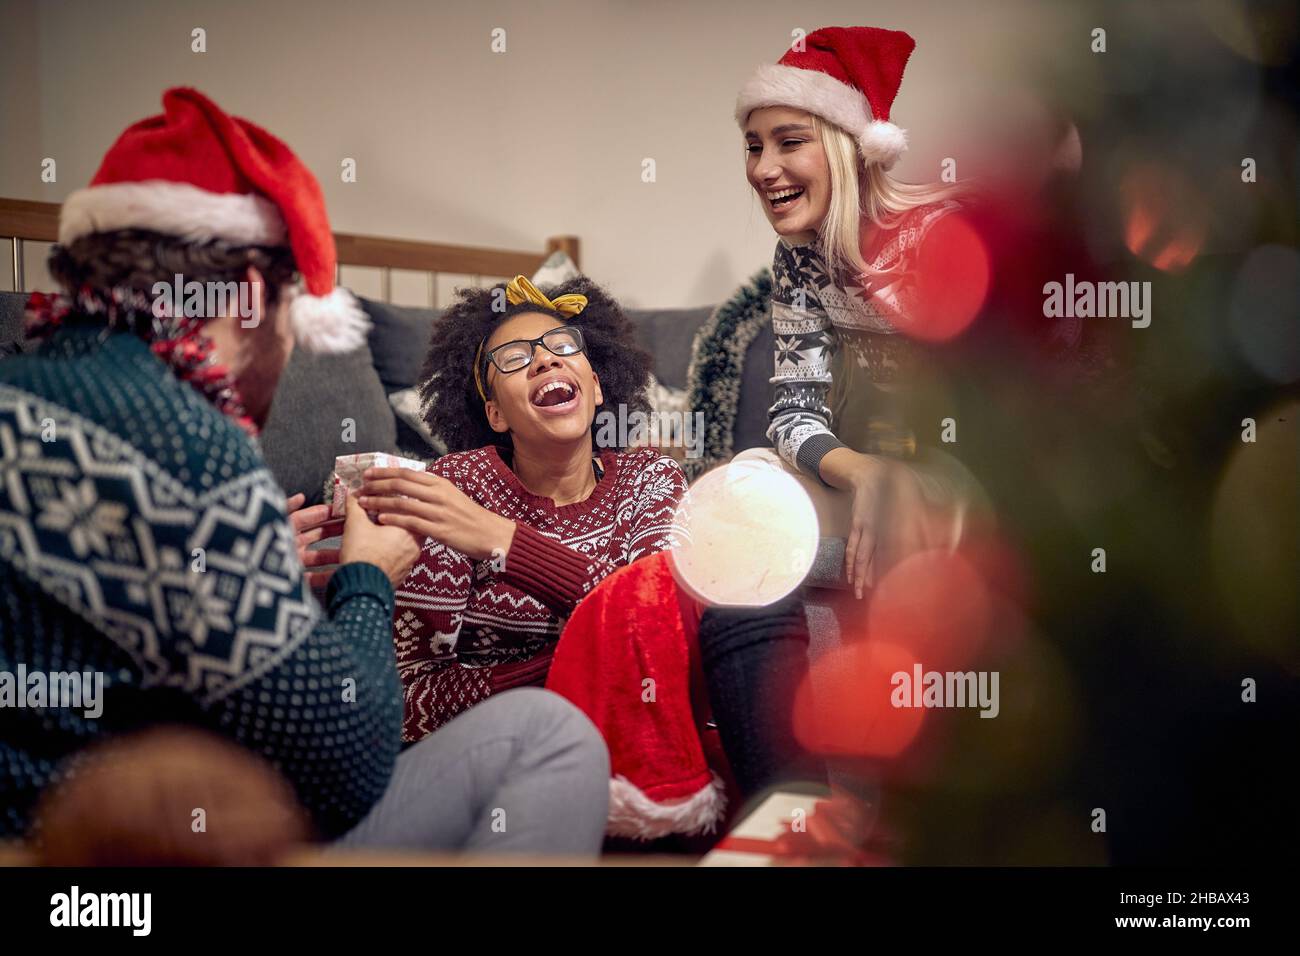 Un gruppo di amici sta avendo un buon tempo mentre ripartiscono i regali durante la festa di Capodanno in un'atmosfera festosa a casa. Natale, Capodanno, vacanze, p. Foto Stock